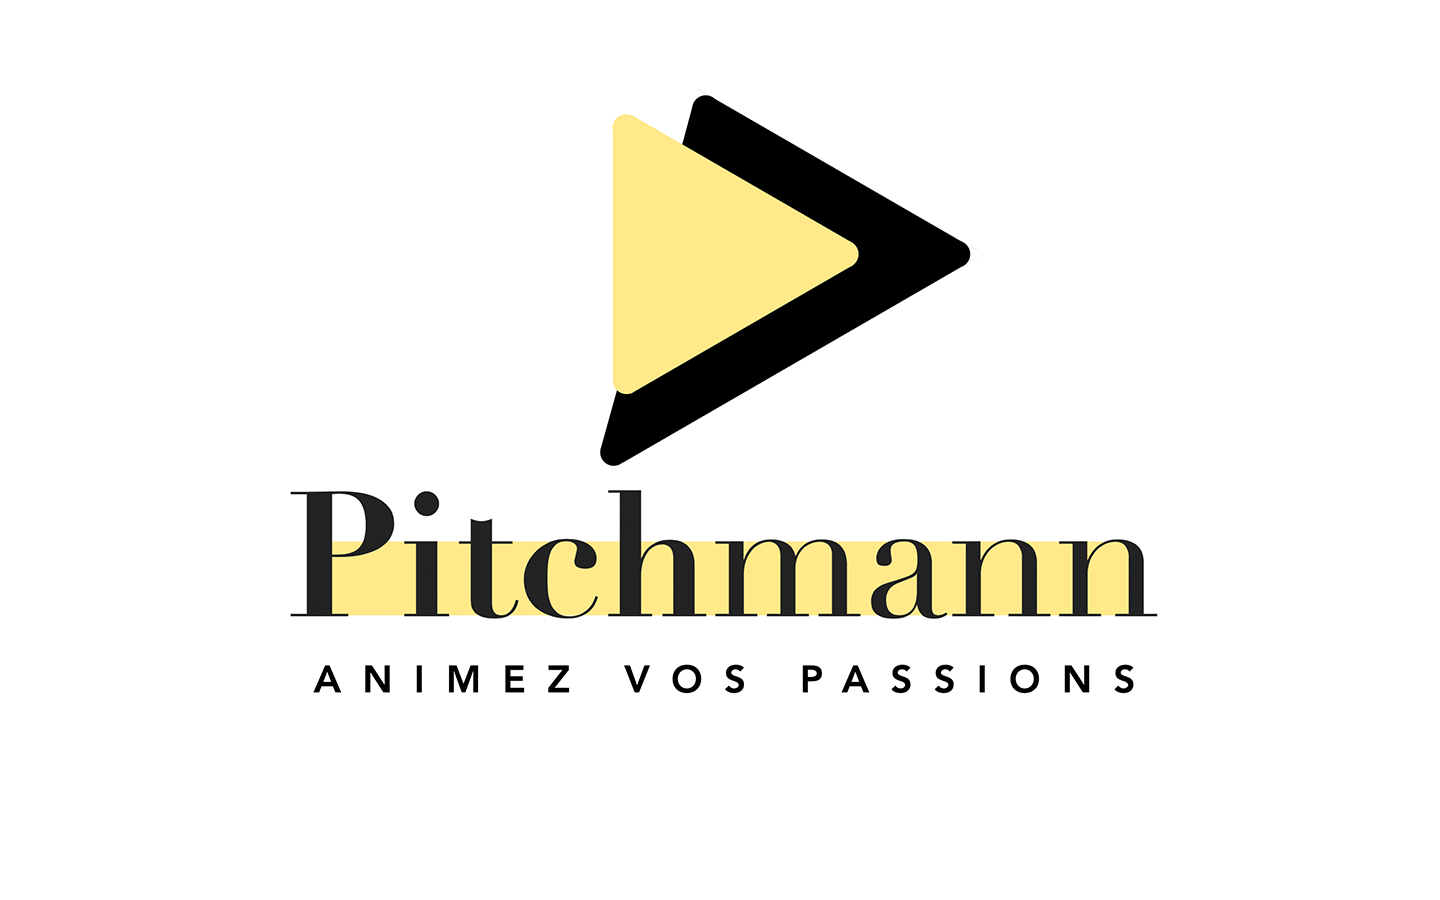 Pitchmann